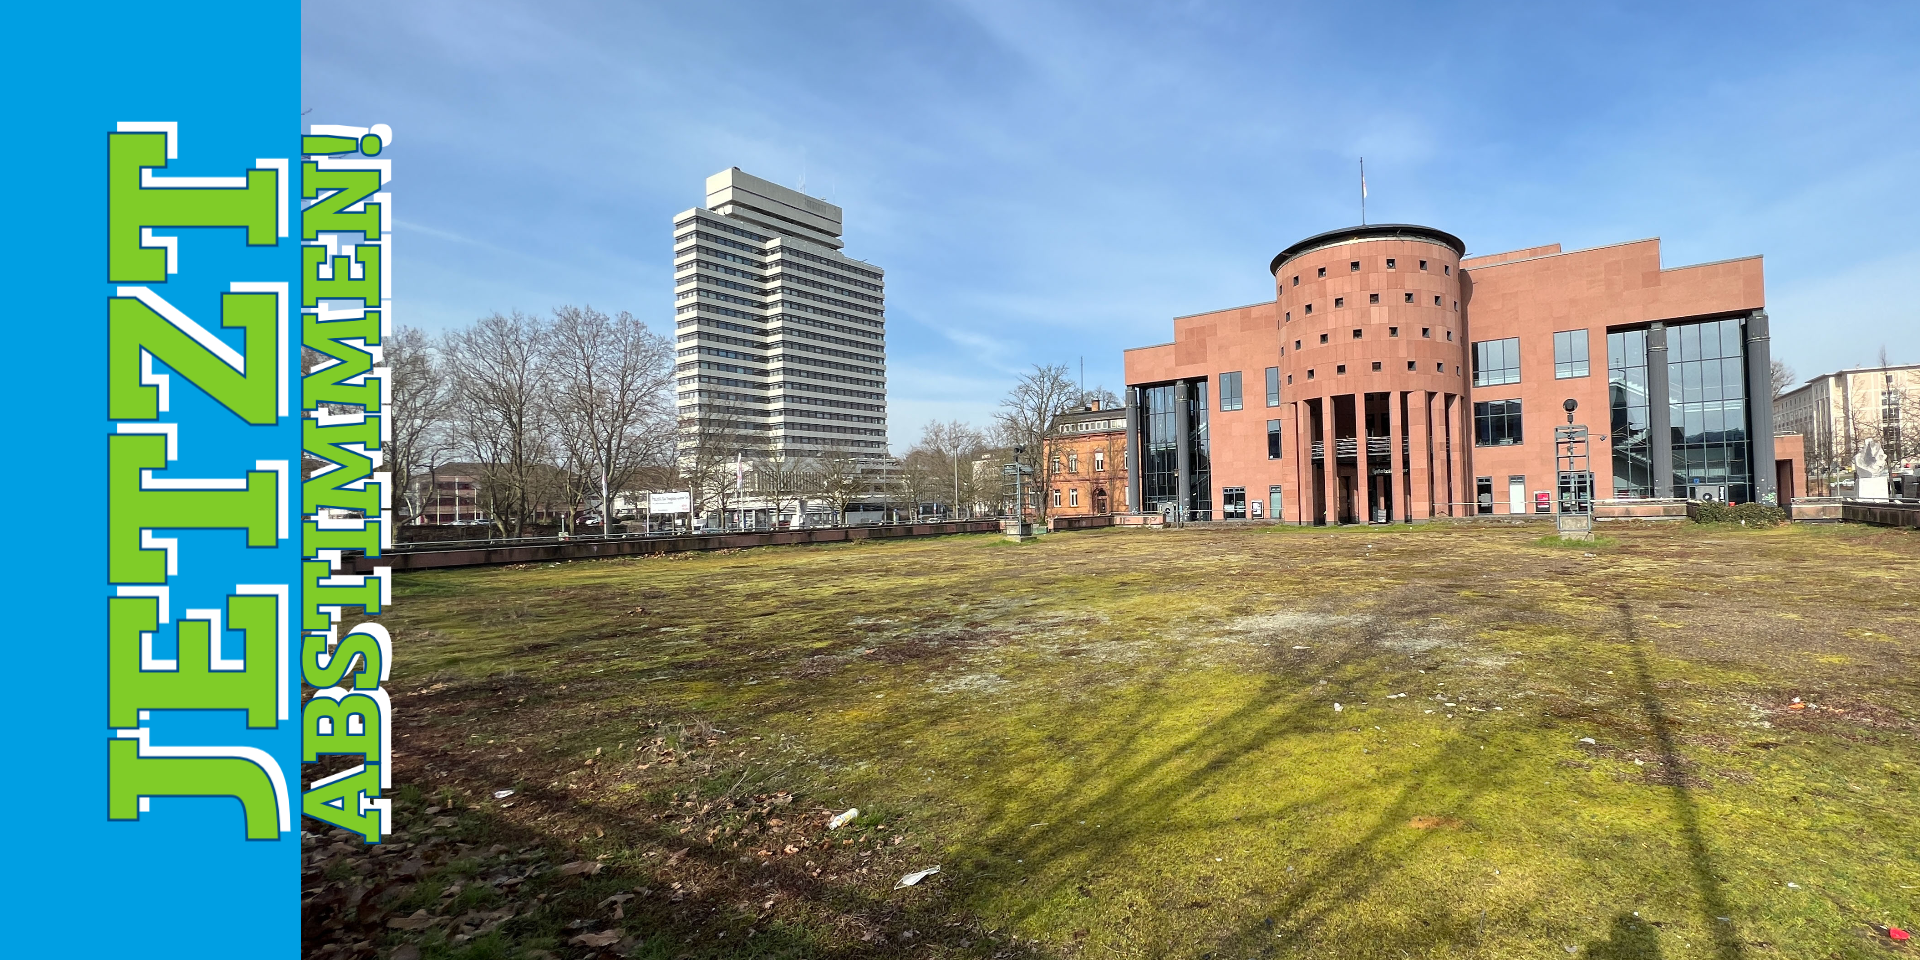 Offener Platz mit Moss auf dem Boden, dahinter ein Sandsteingebäude mit einer Rotunde (Pfalztheater Kaiserslautern) und ein Hochhaus (Rathaus Kaiserslautern)